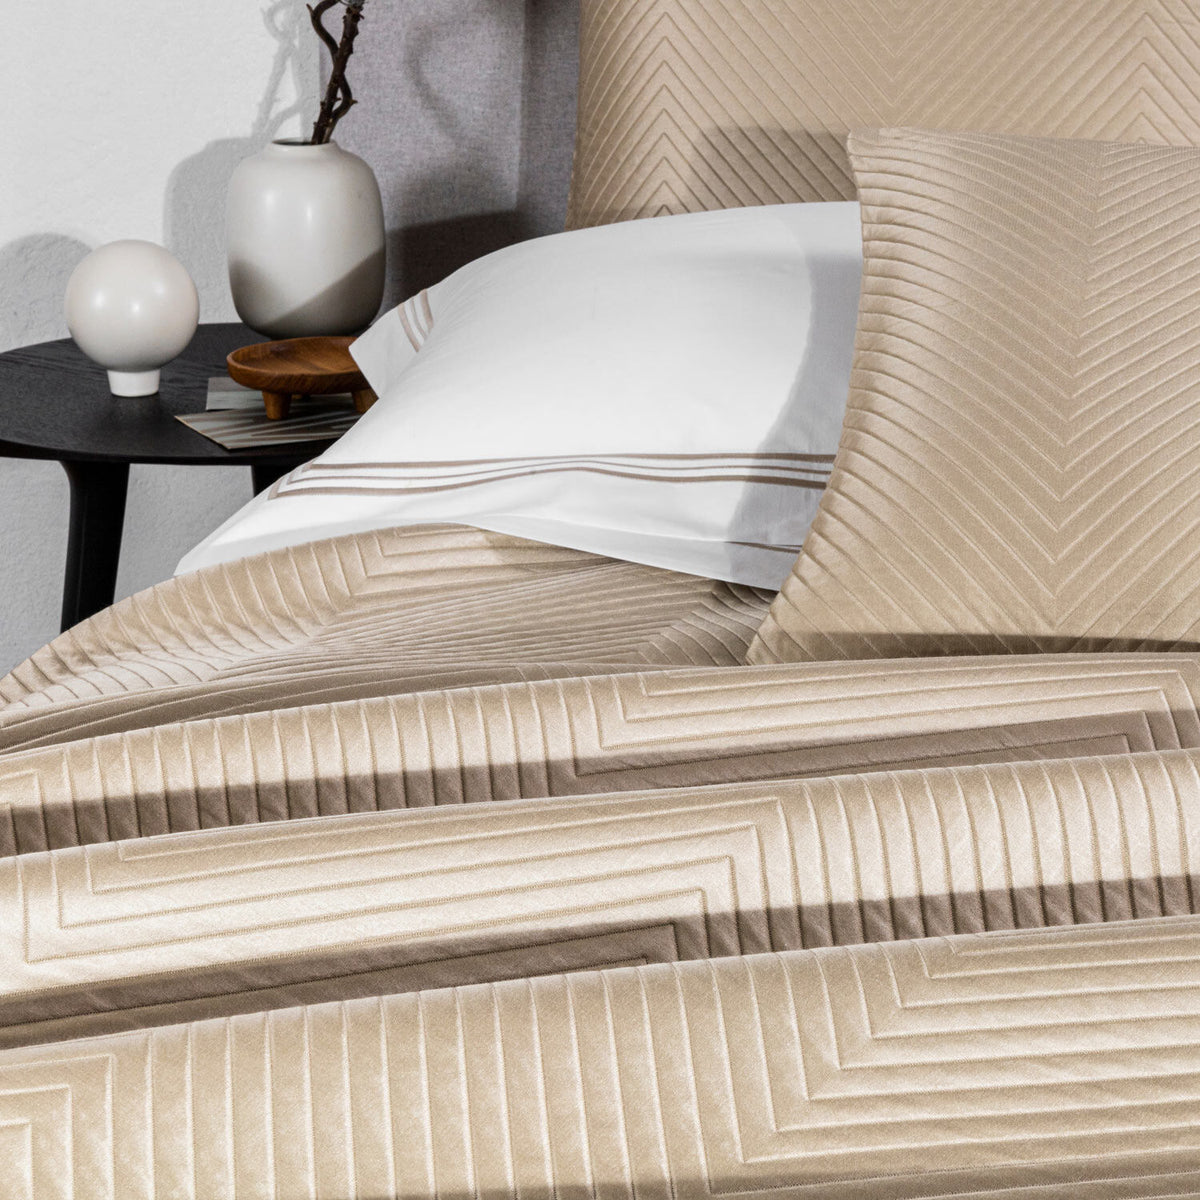 Luxury Herringbone Bedspread